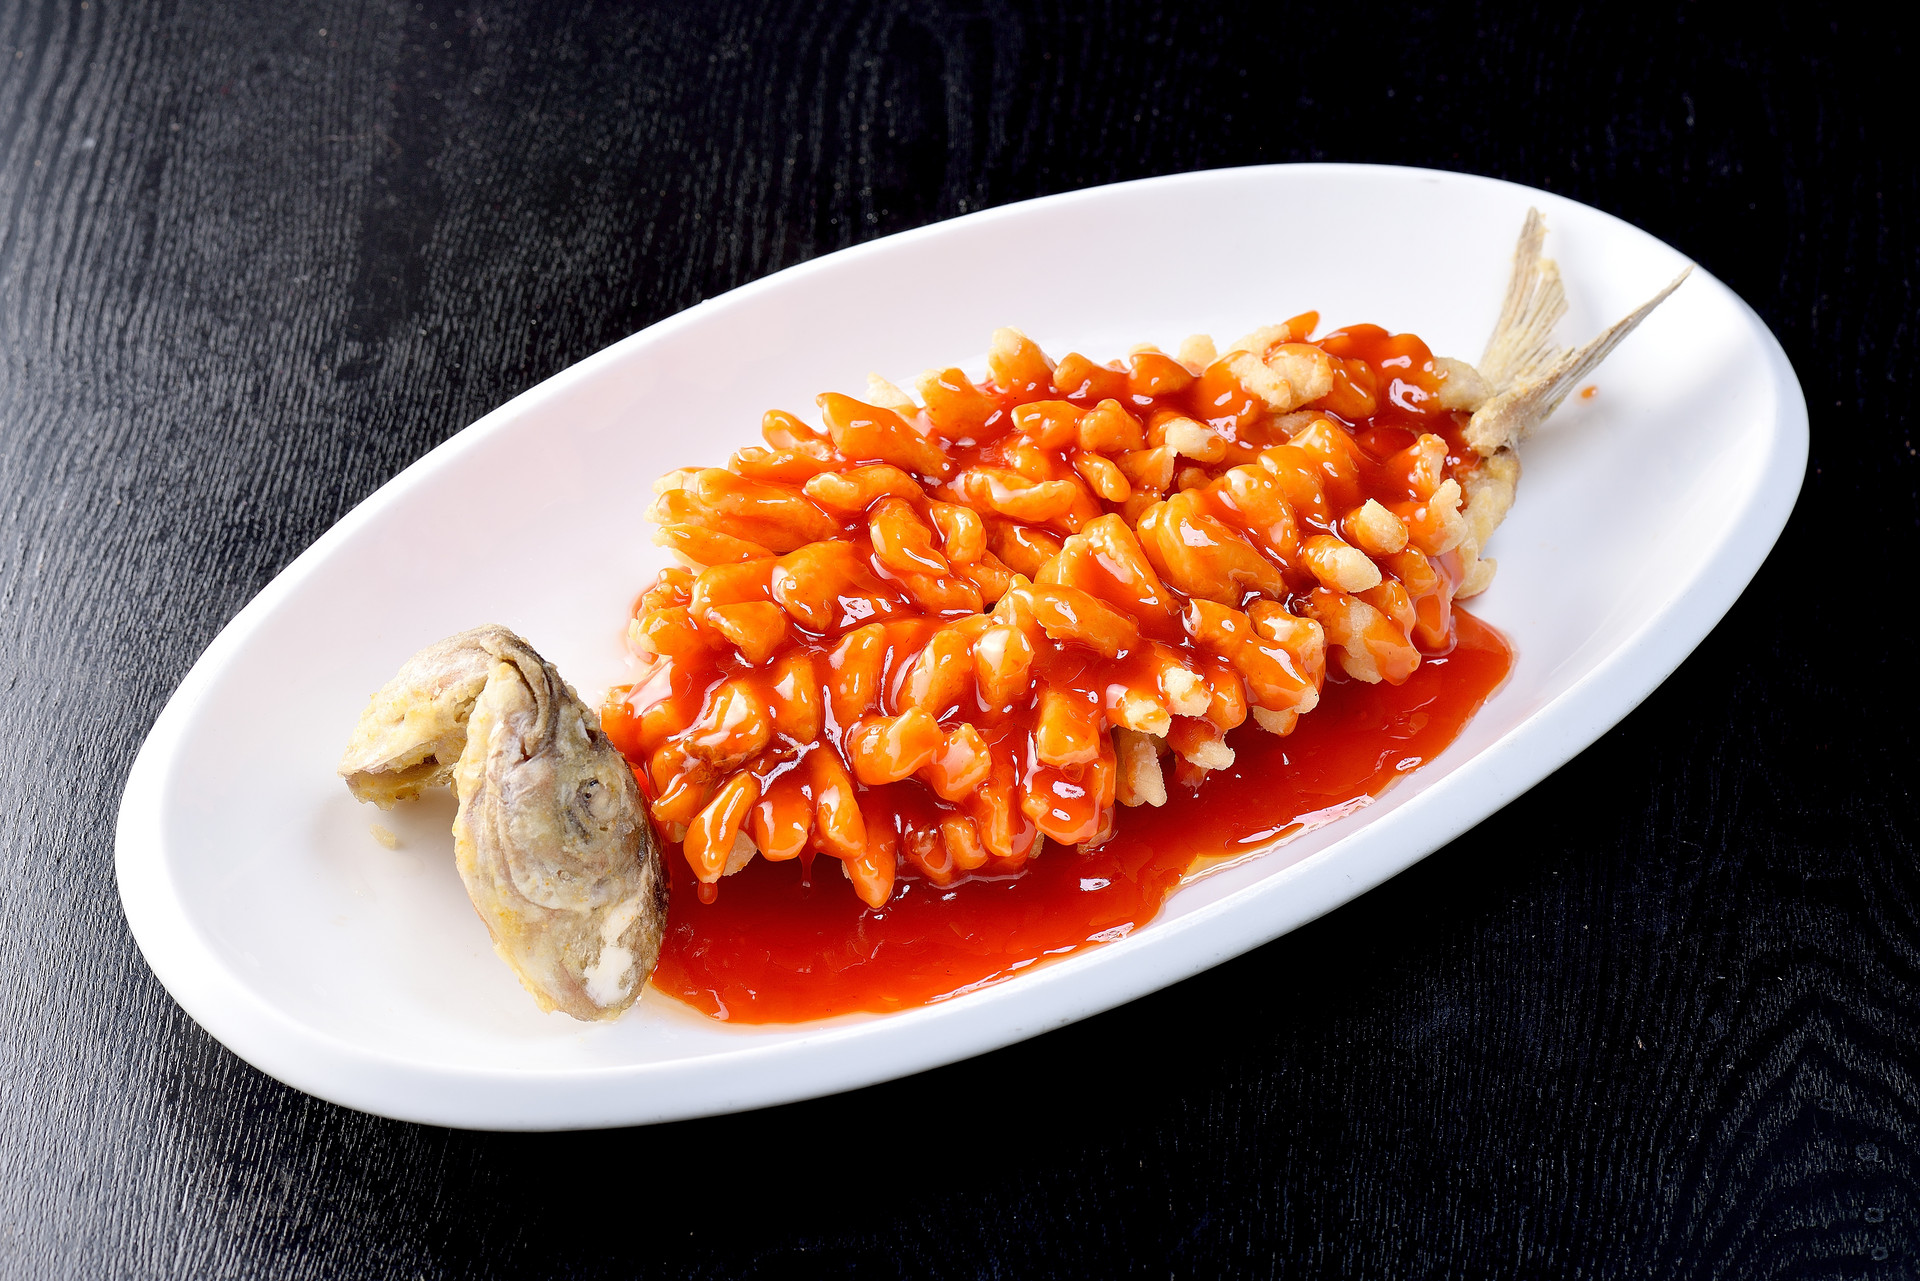 松鼠桂鱼是哪个菜系的代表菜